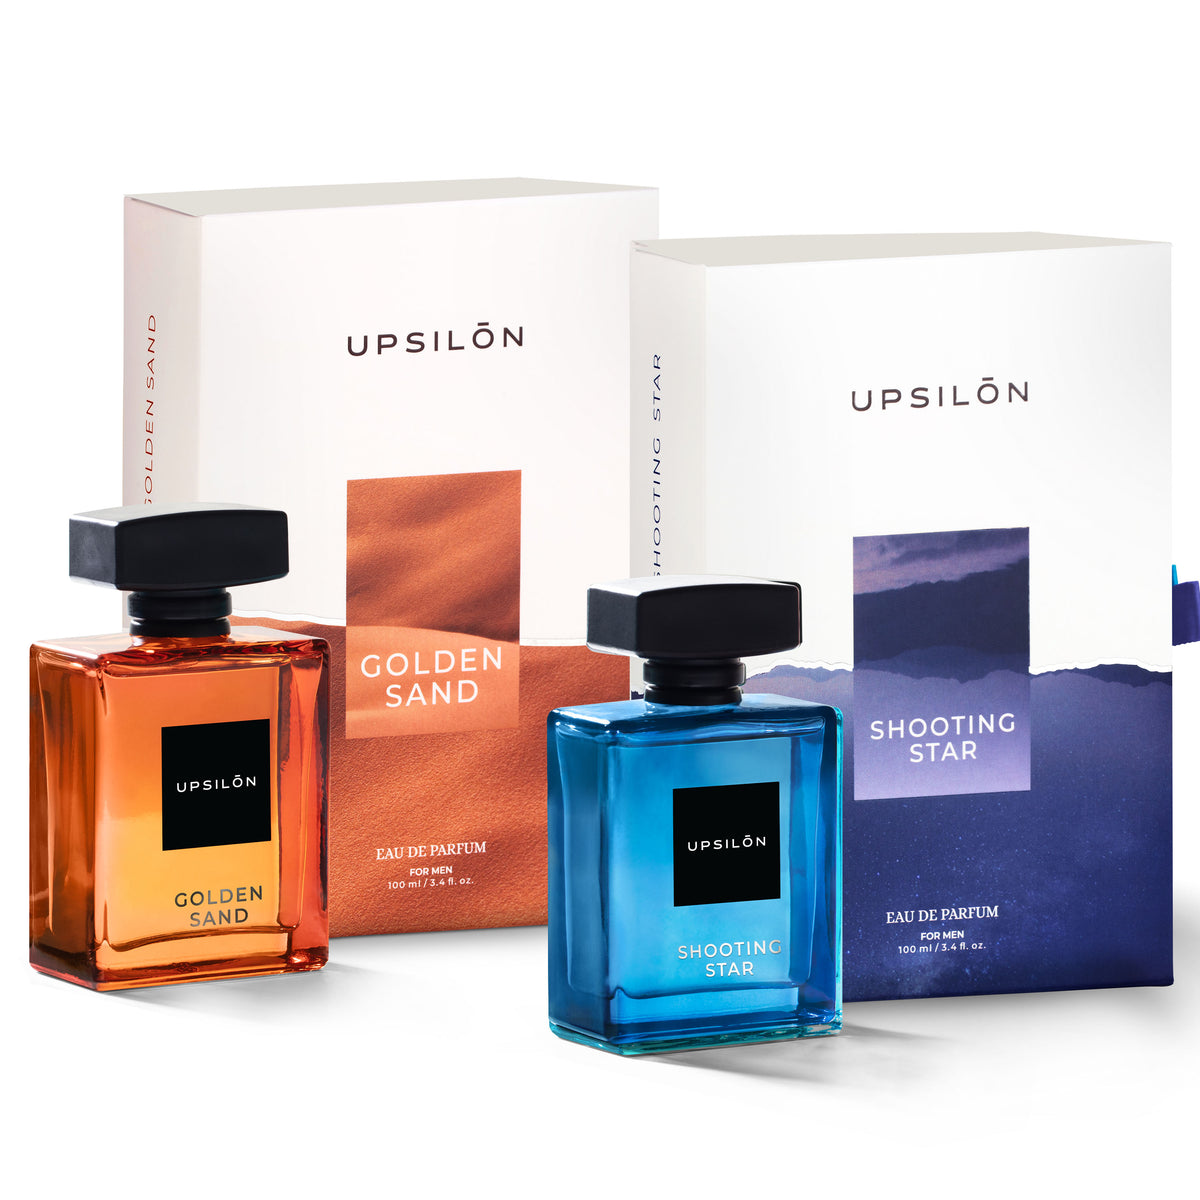 Gift set of two Upsilon Eau de Parfum fragrances for men, Golden Sand and Shooting Star